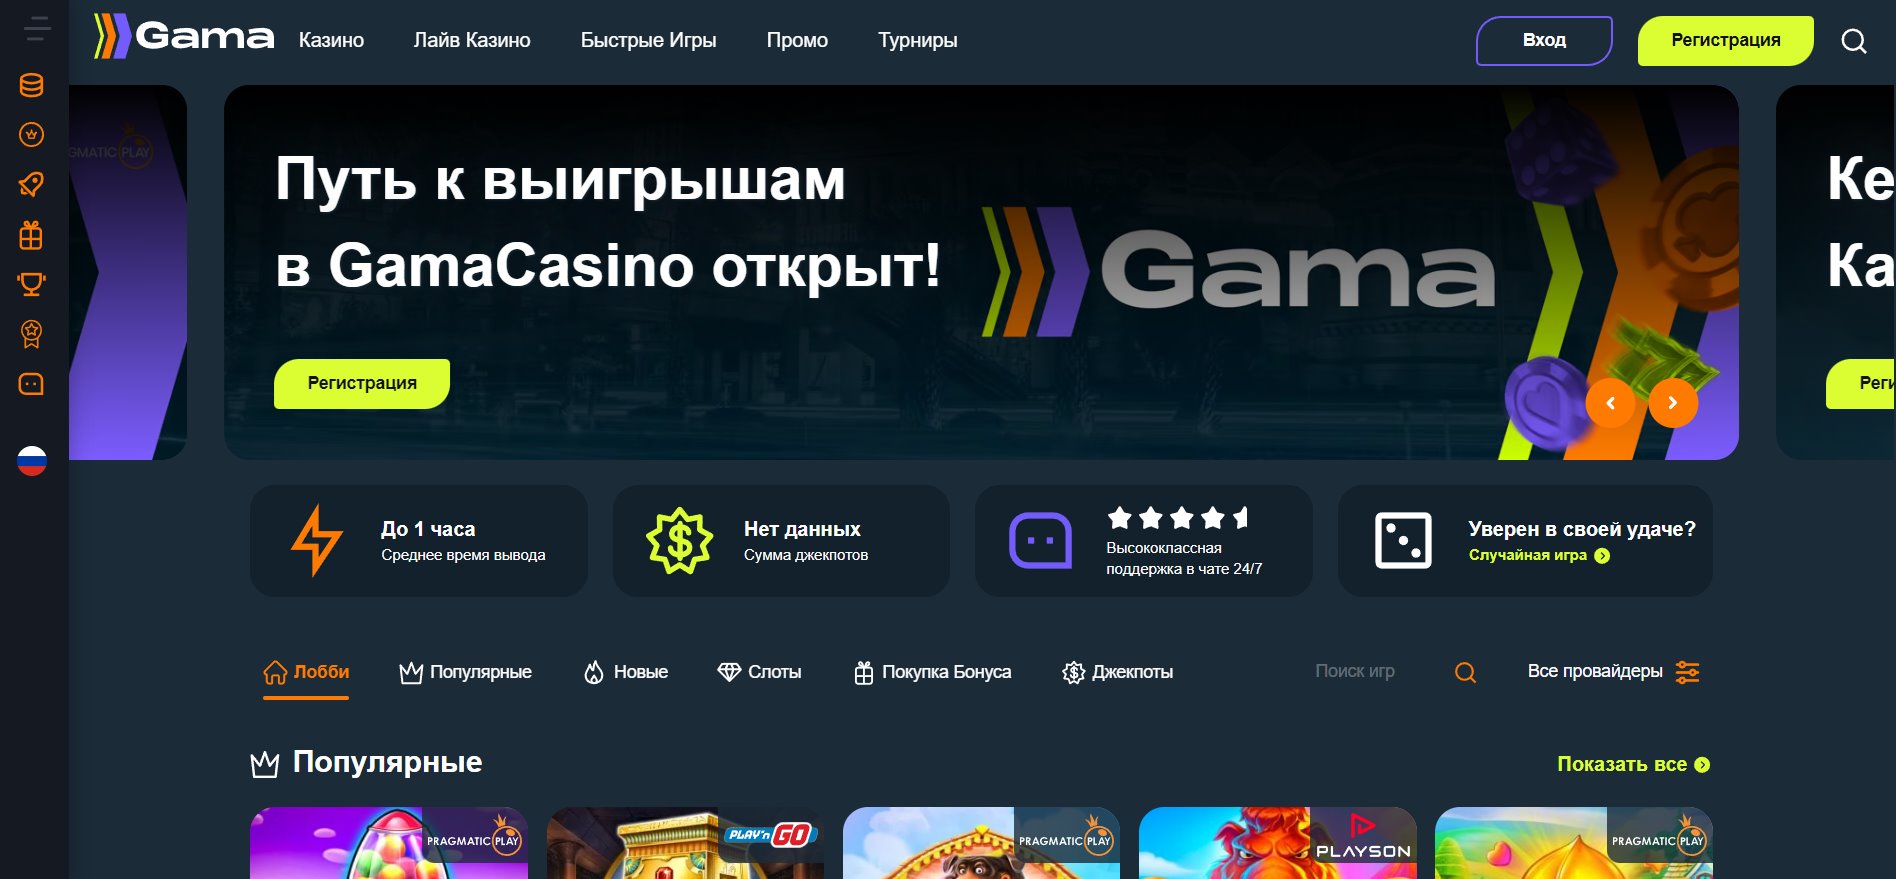 Gama Casino играть возьмите должностном сайте Фиксация а также праздник онлайновый. Непраздничное лучник Гама Казино